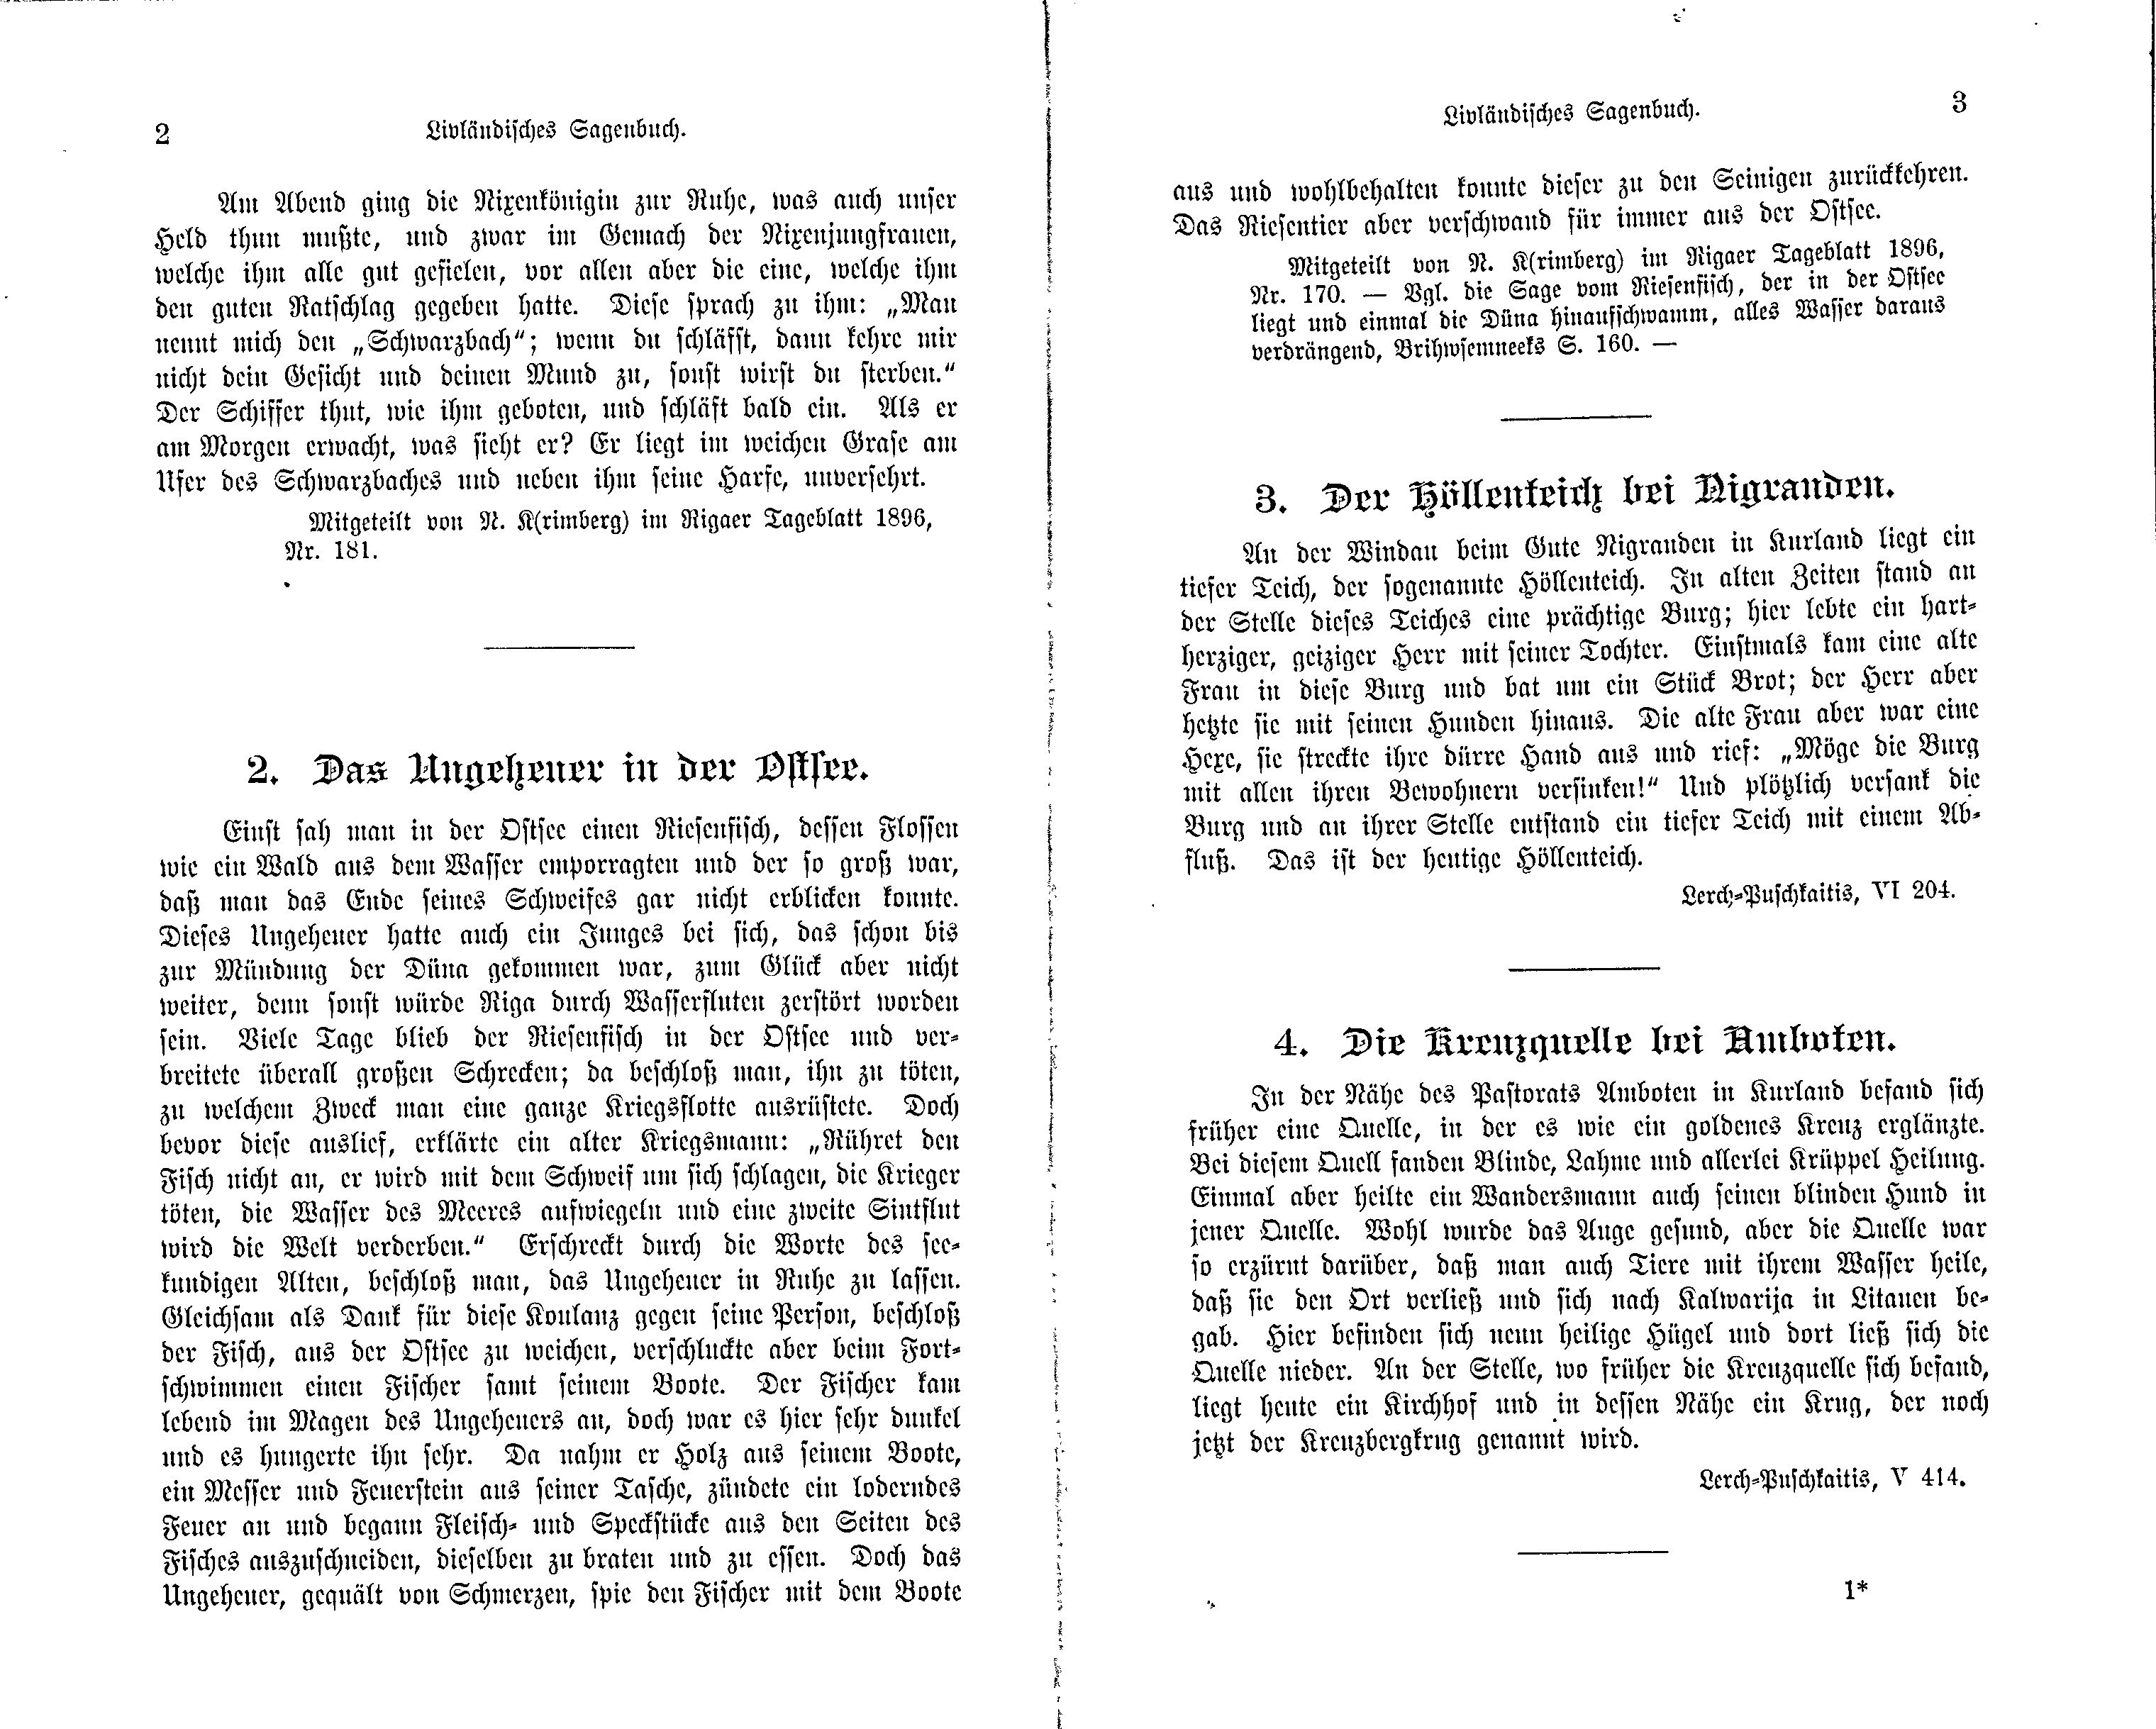 Der Höllenteich bei Nigranden (1897) | 1. (2-3) Main body of text